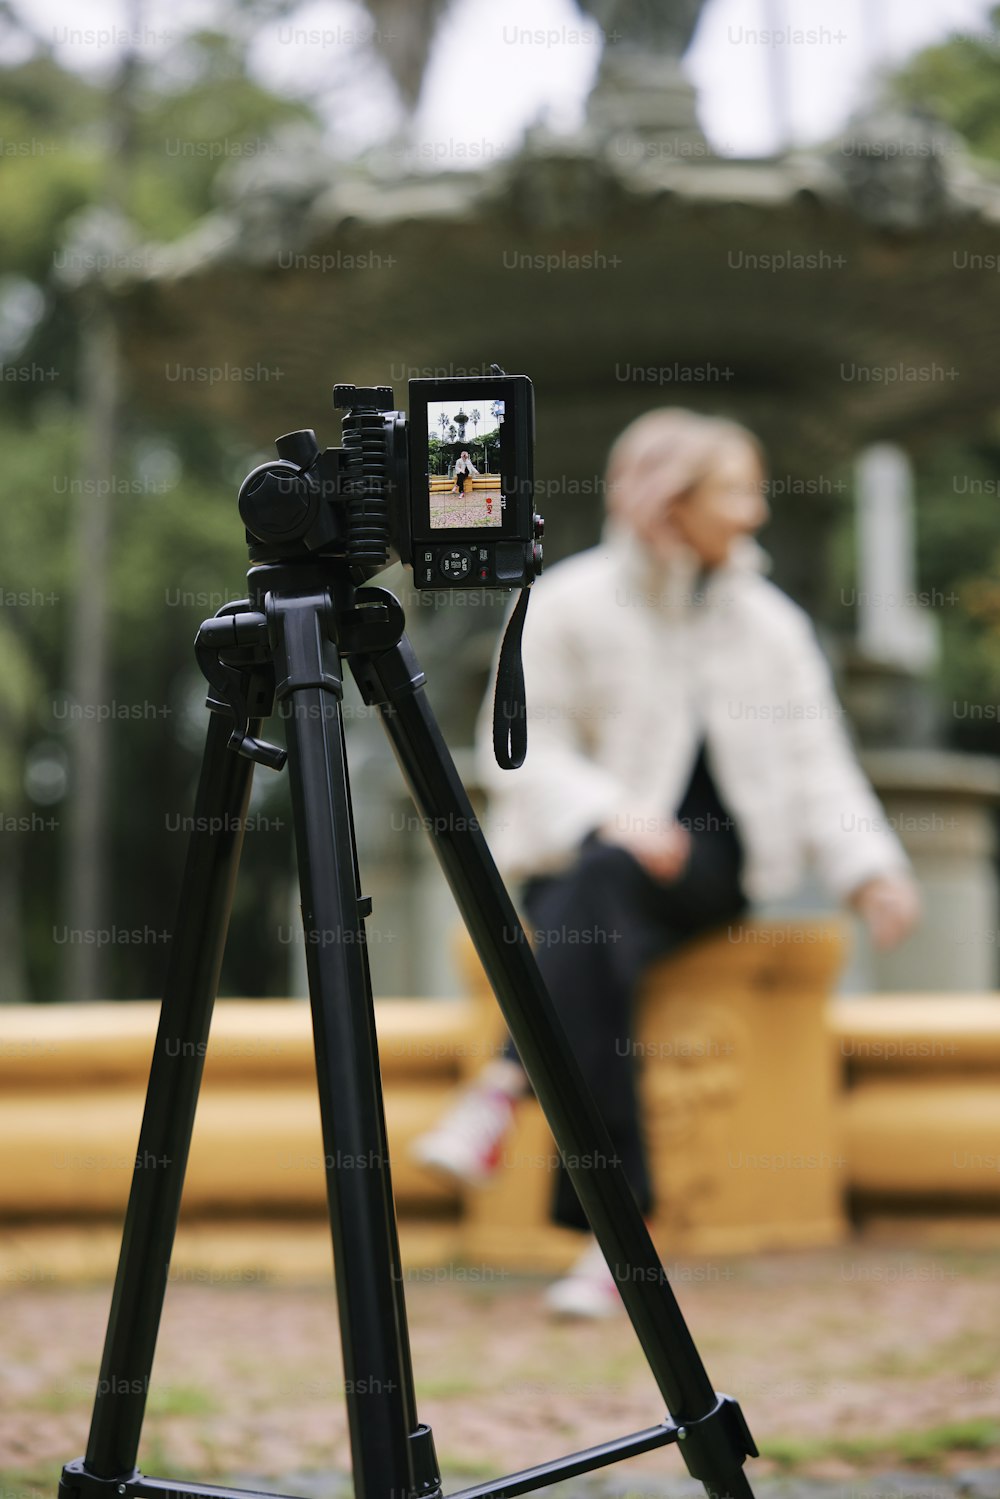 uma pessoa sentada em um banco com uma câmera em um tripé